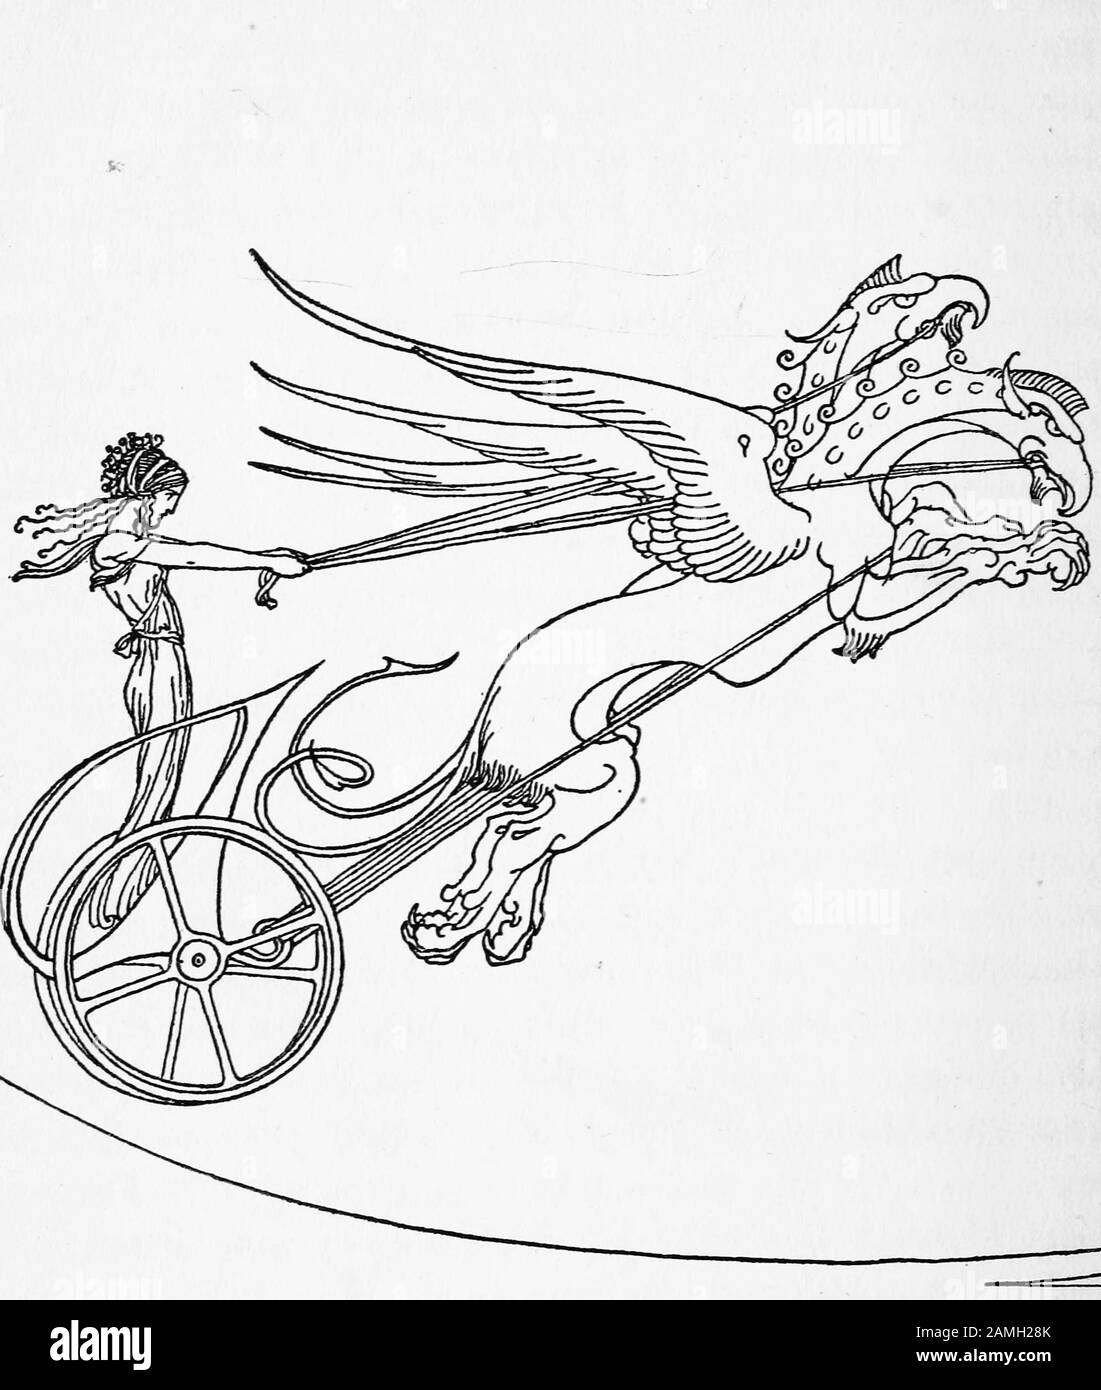 Abbildung: Person, die einen fliegenden Wagen fährt, aus dem antiken griechischen Mythos, 1921. Kostenloses Internetarchiv. () Stockfoto